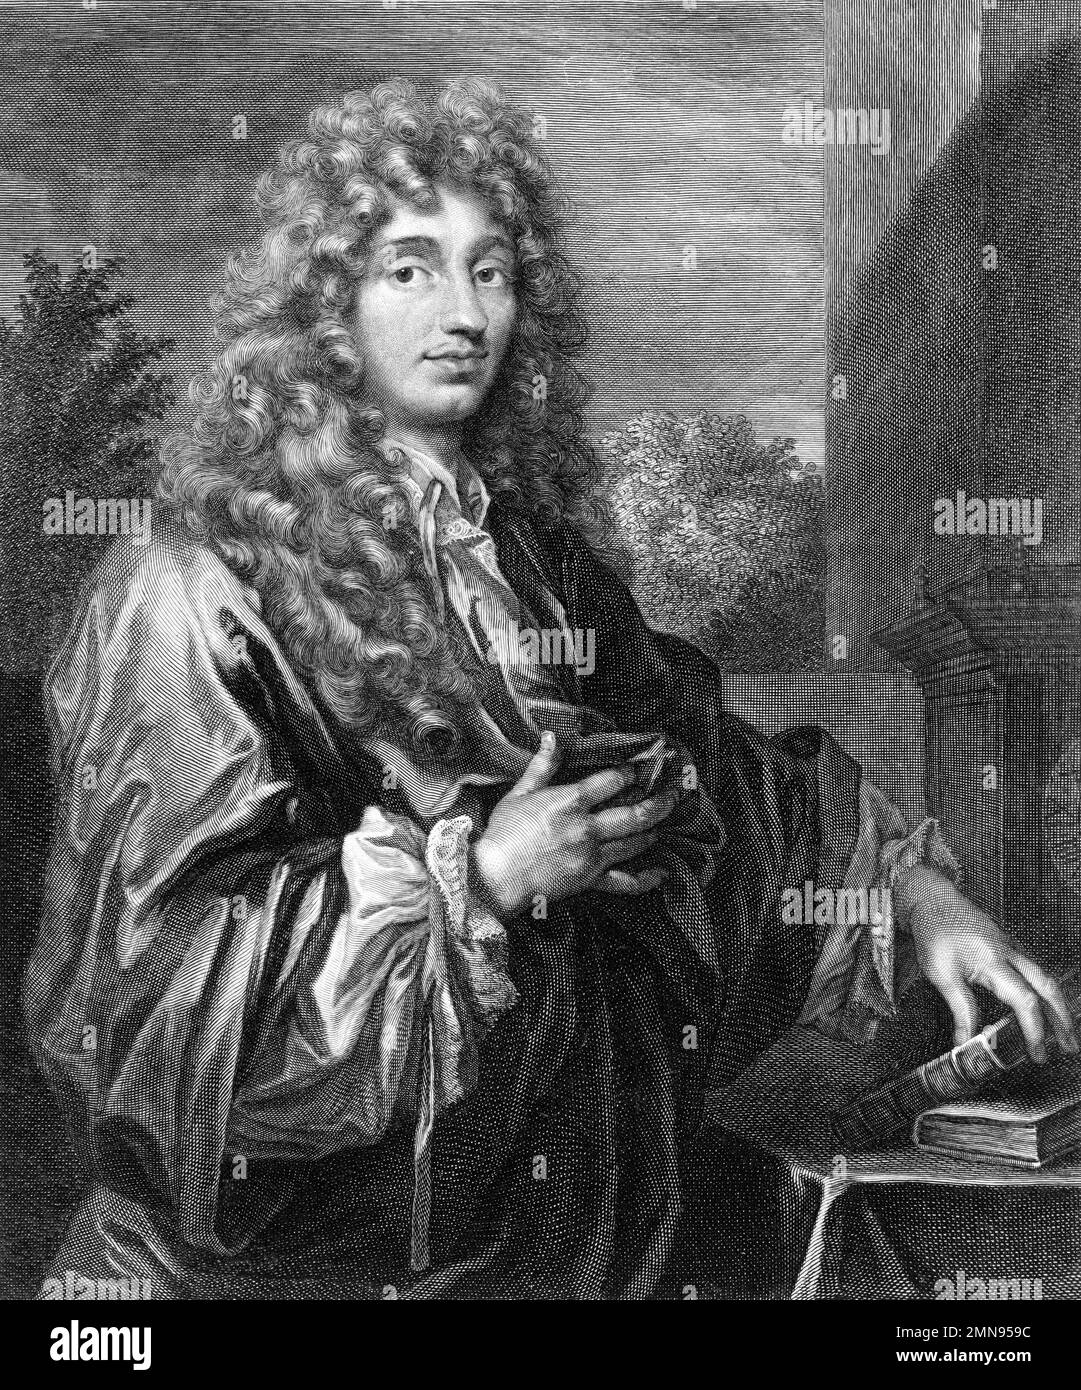 Christiaan Huygens. Porträt des niederländischen Mathematikers, Physikers und Astronomen Christiaan Huygens (1629-1695), Gravur, c. 1687/8 Stockfoto